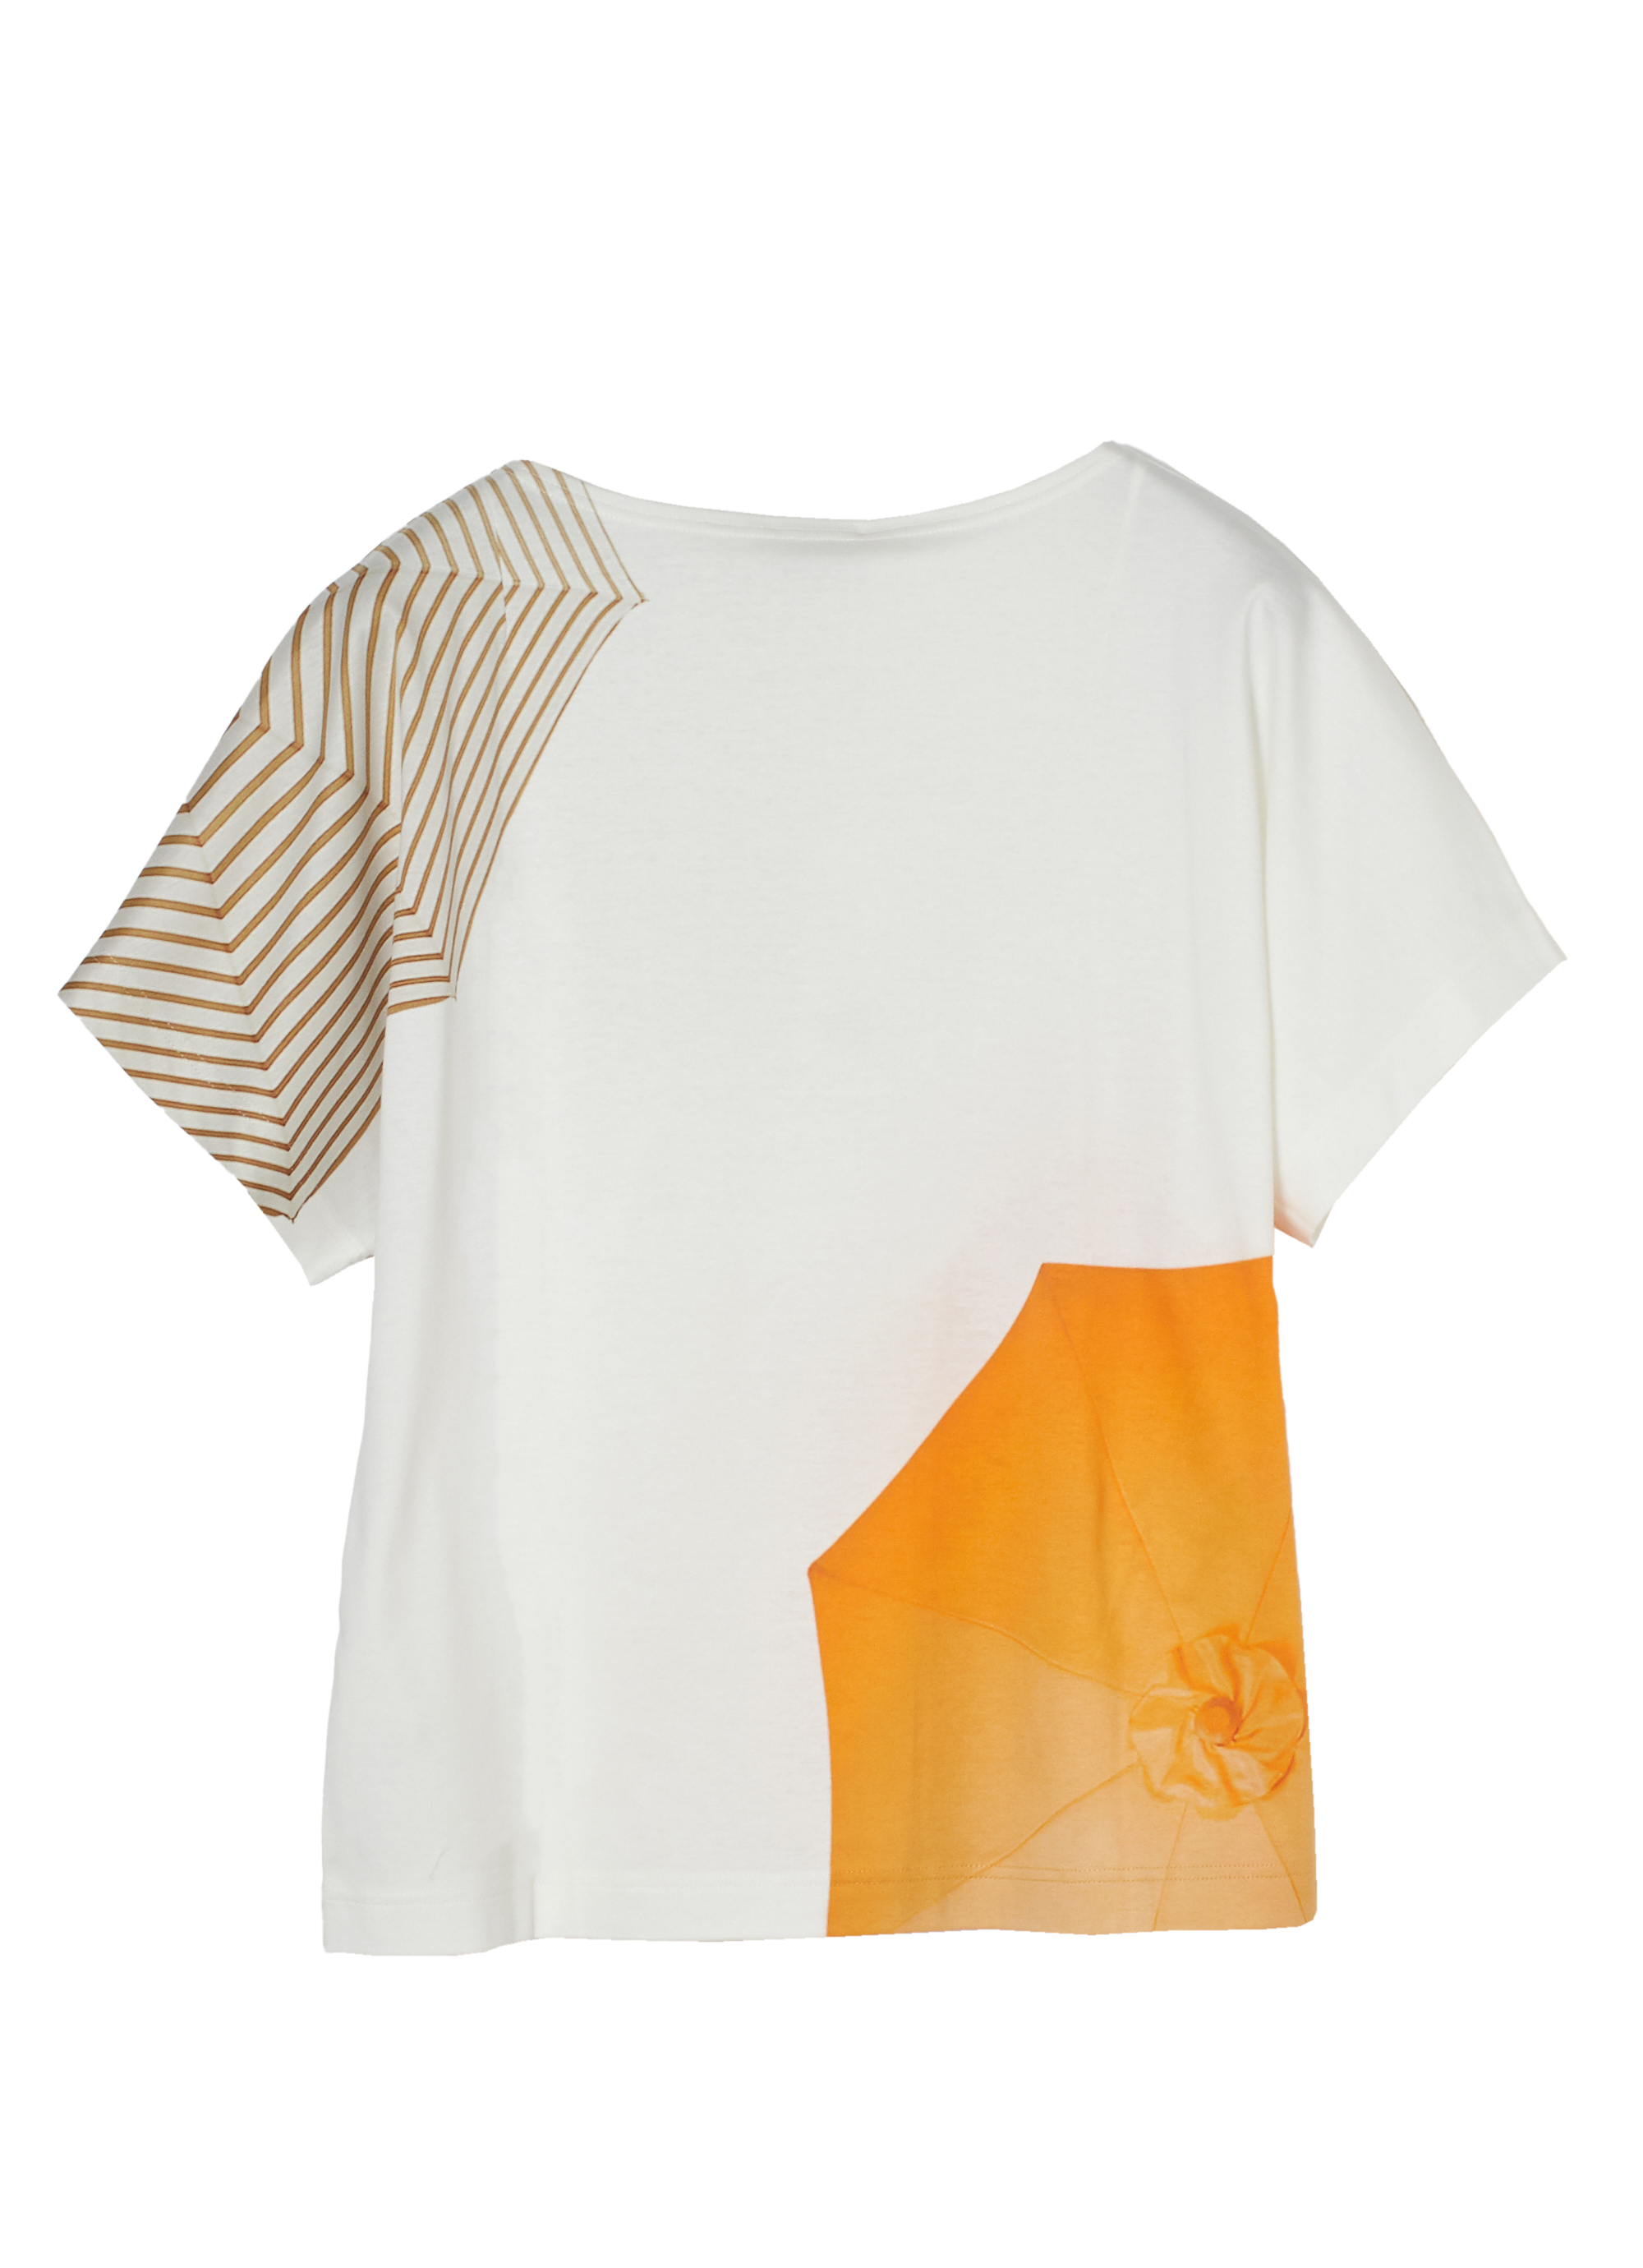 プリントTシャツ 詳細画像 ホワイト×オレンジ×ベージュ 2